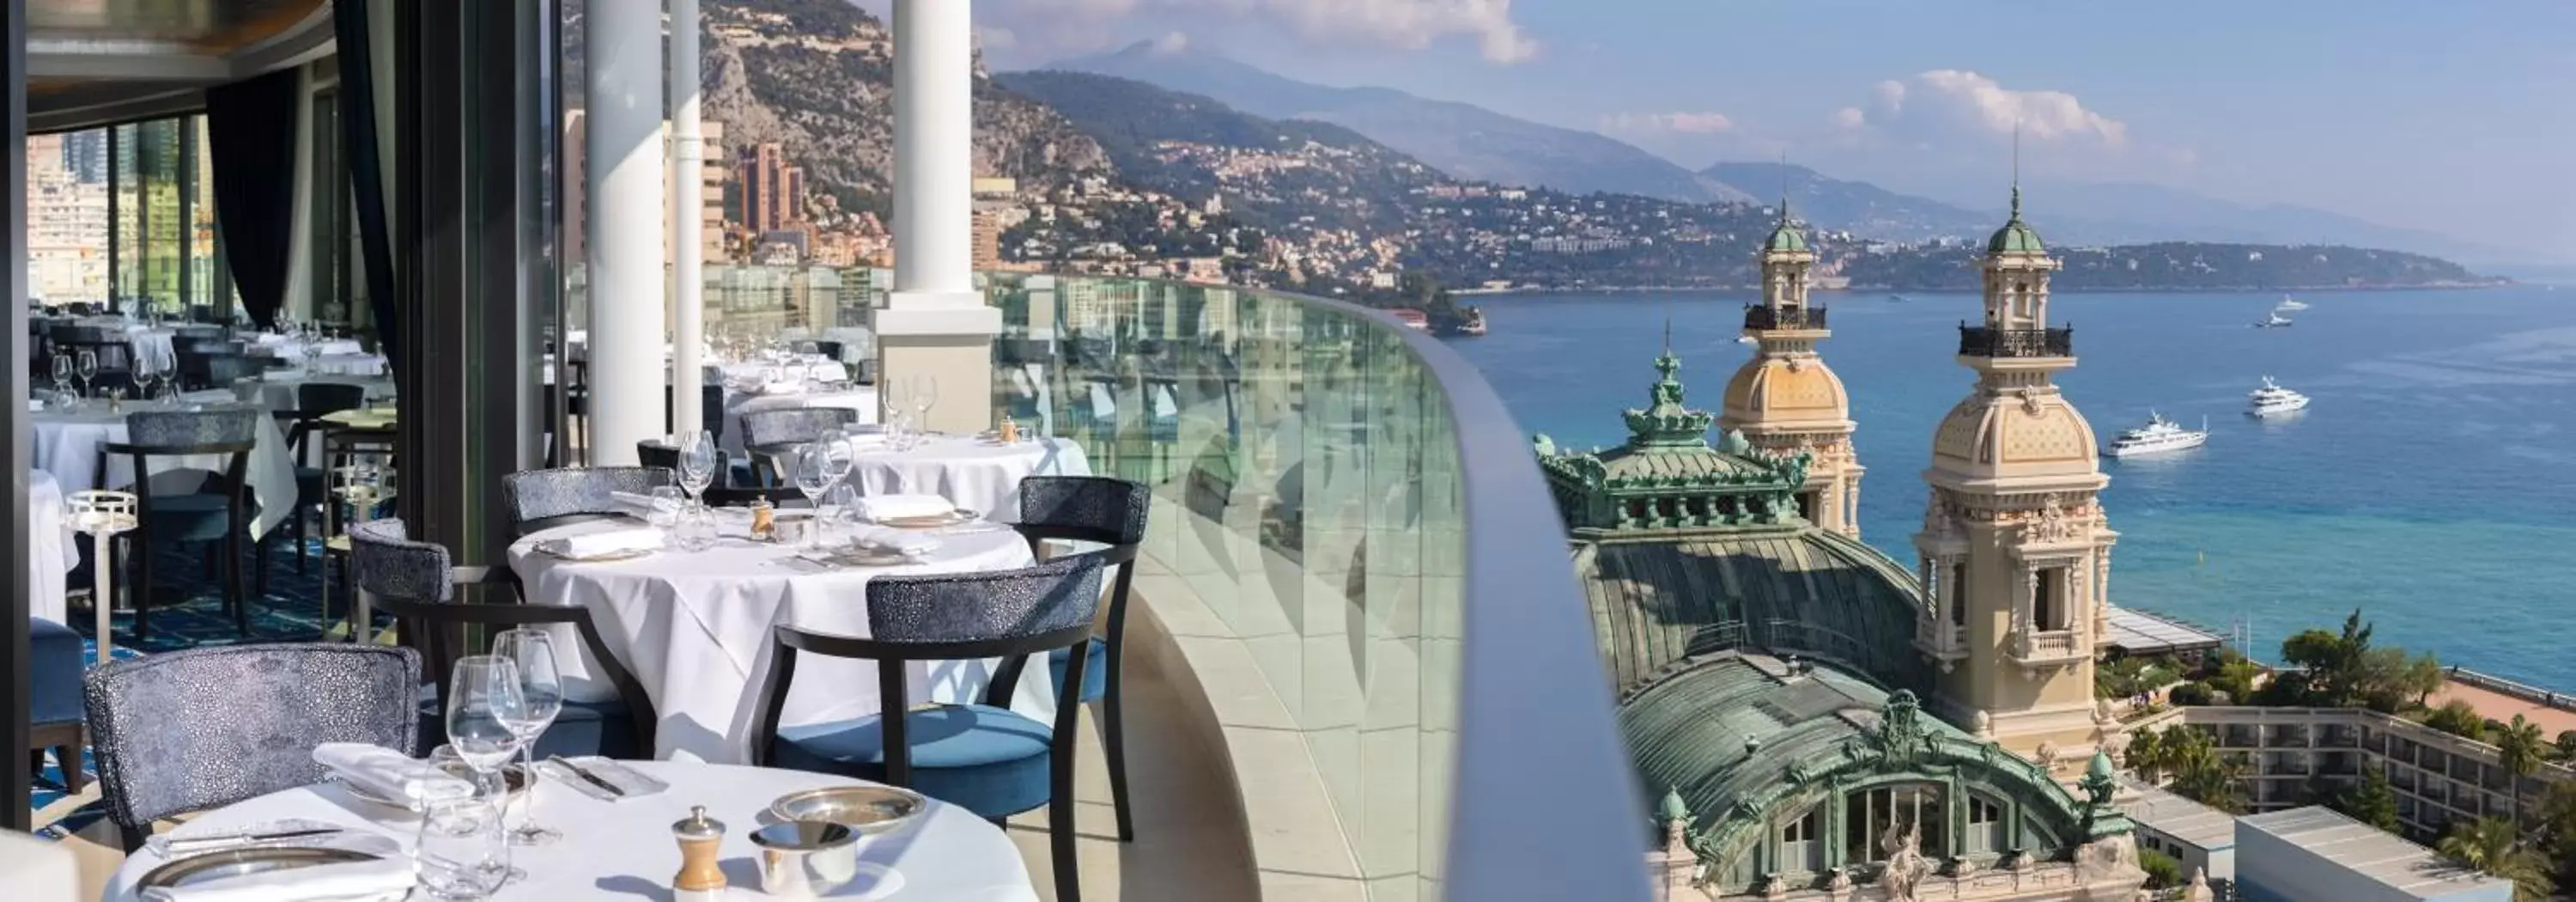 Restaurant/places to eat in Hôtel de Paris Monte-Carlo